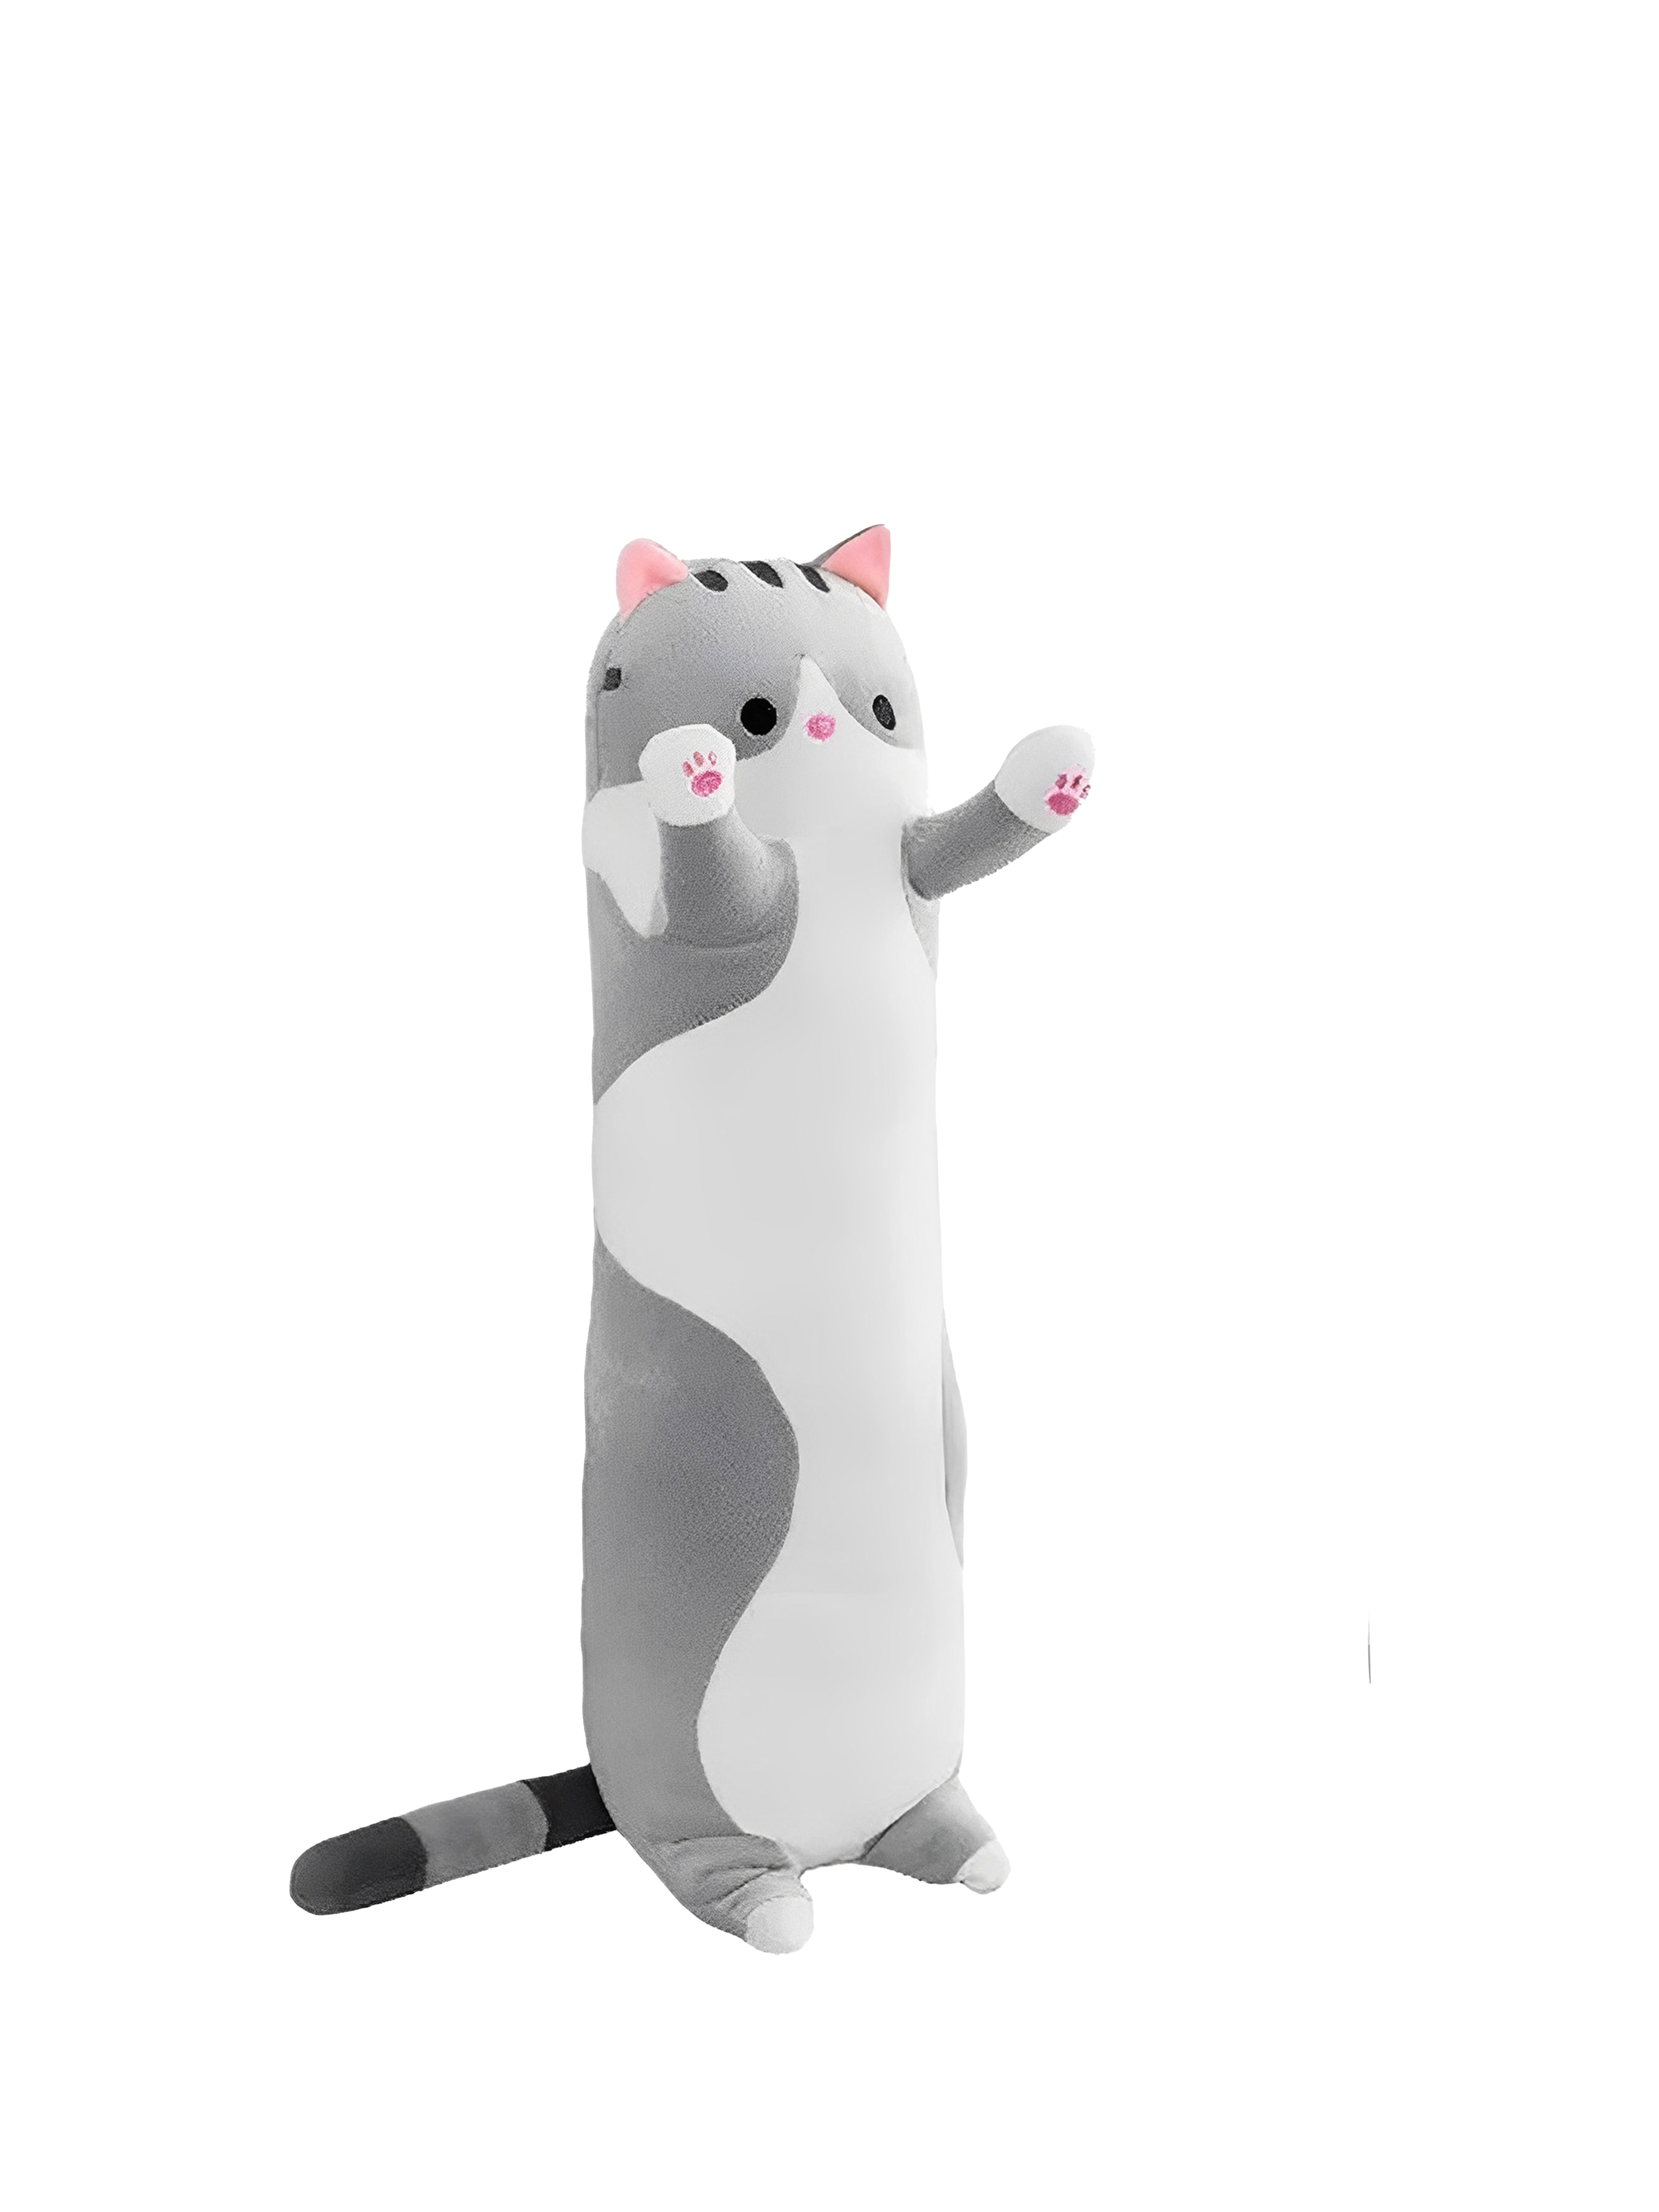 Мягкая игрушка Market toys lab антистресс кот-батон-багет, 130 см, серый кот батон худой 70 см мягкая игрушка подушка длинный серый обнимашка антистресс кот ба